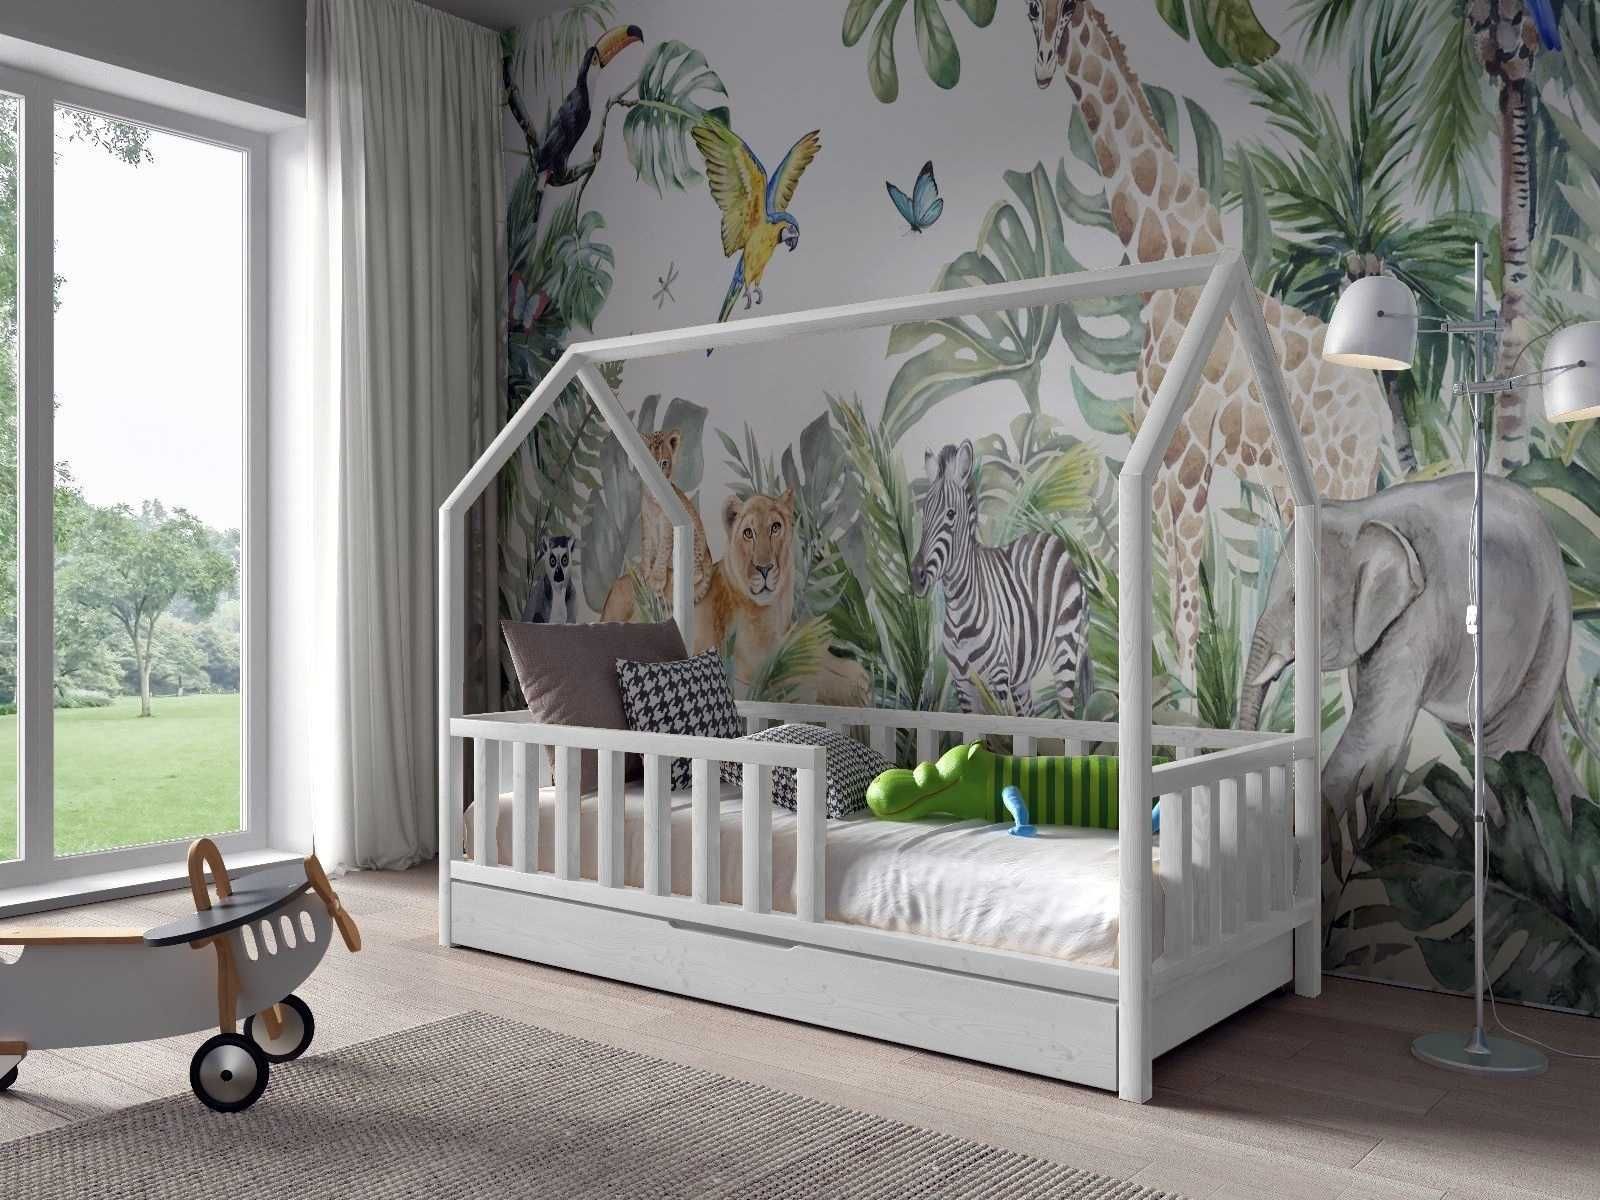 Nowe łóżko dla dzieci domek ANTOŚ 160x80 - materac GRATIS